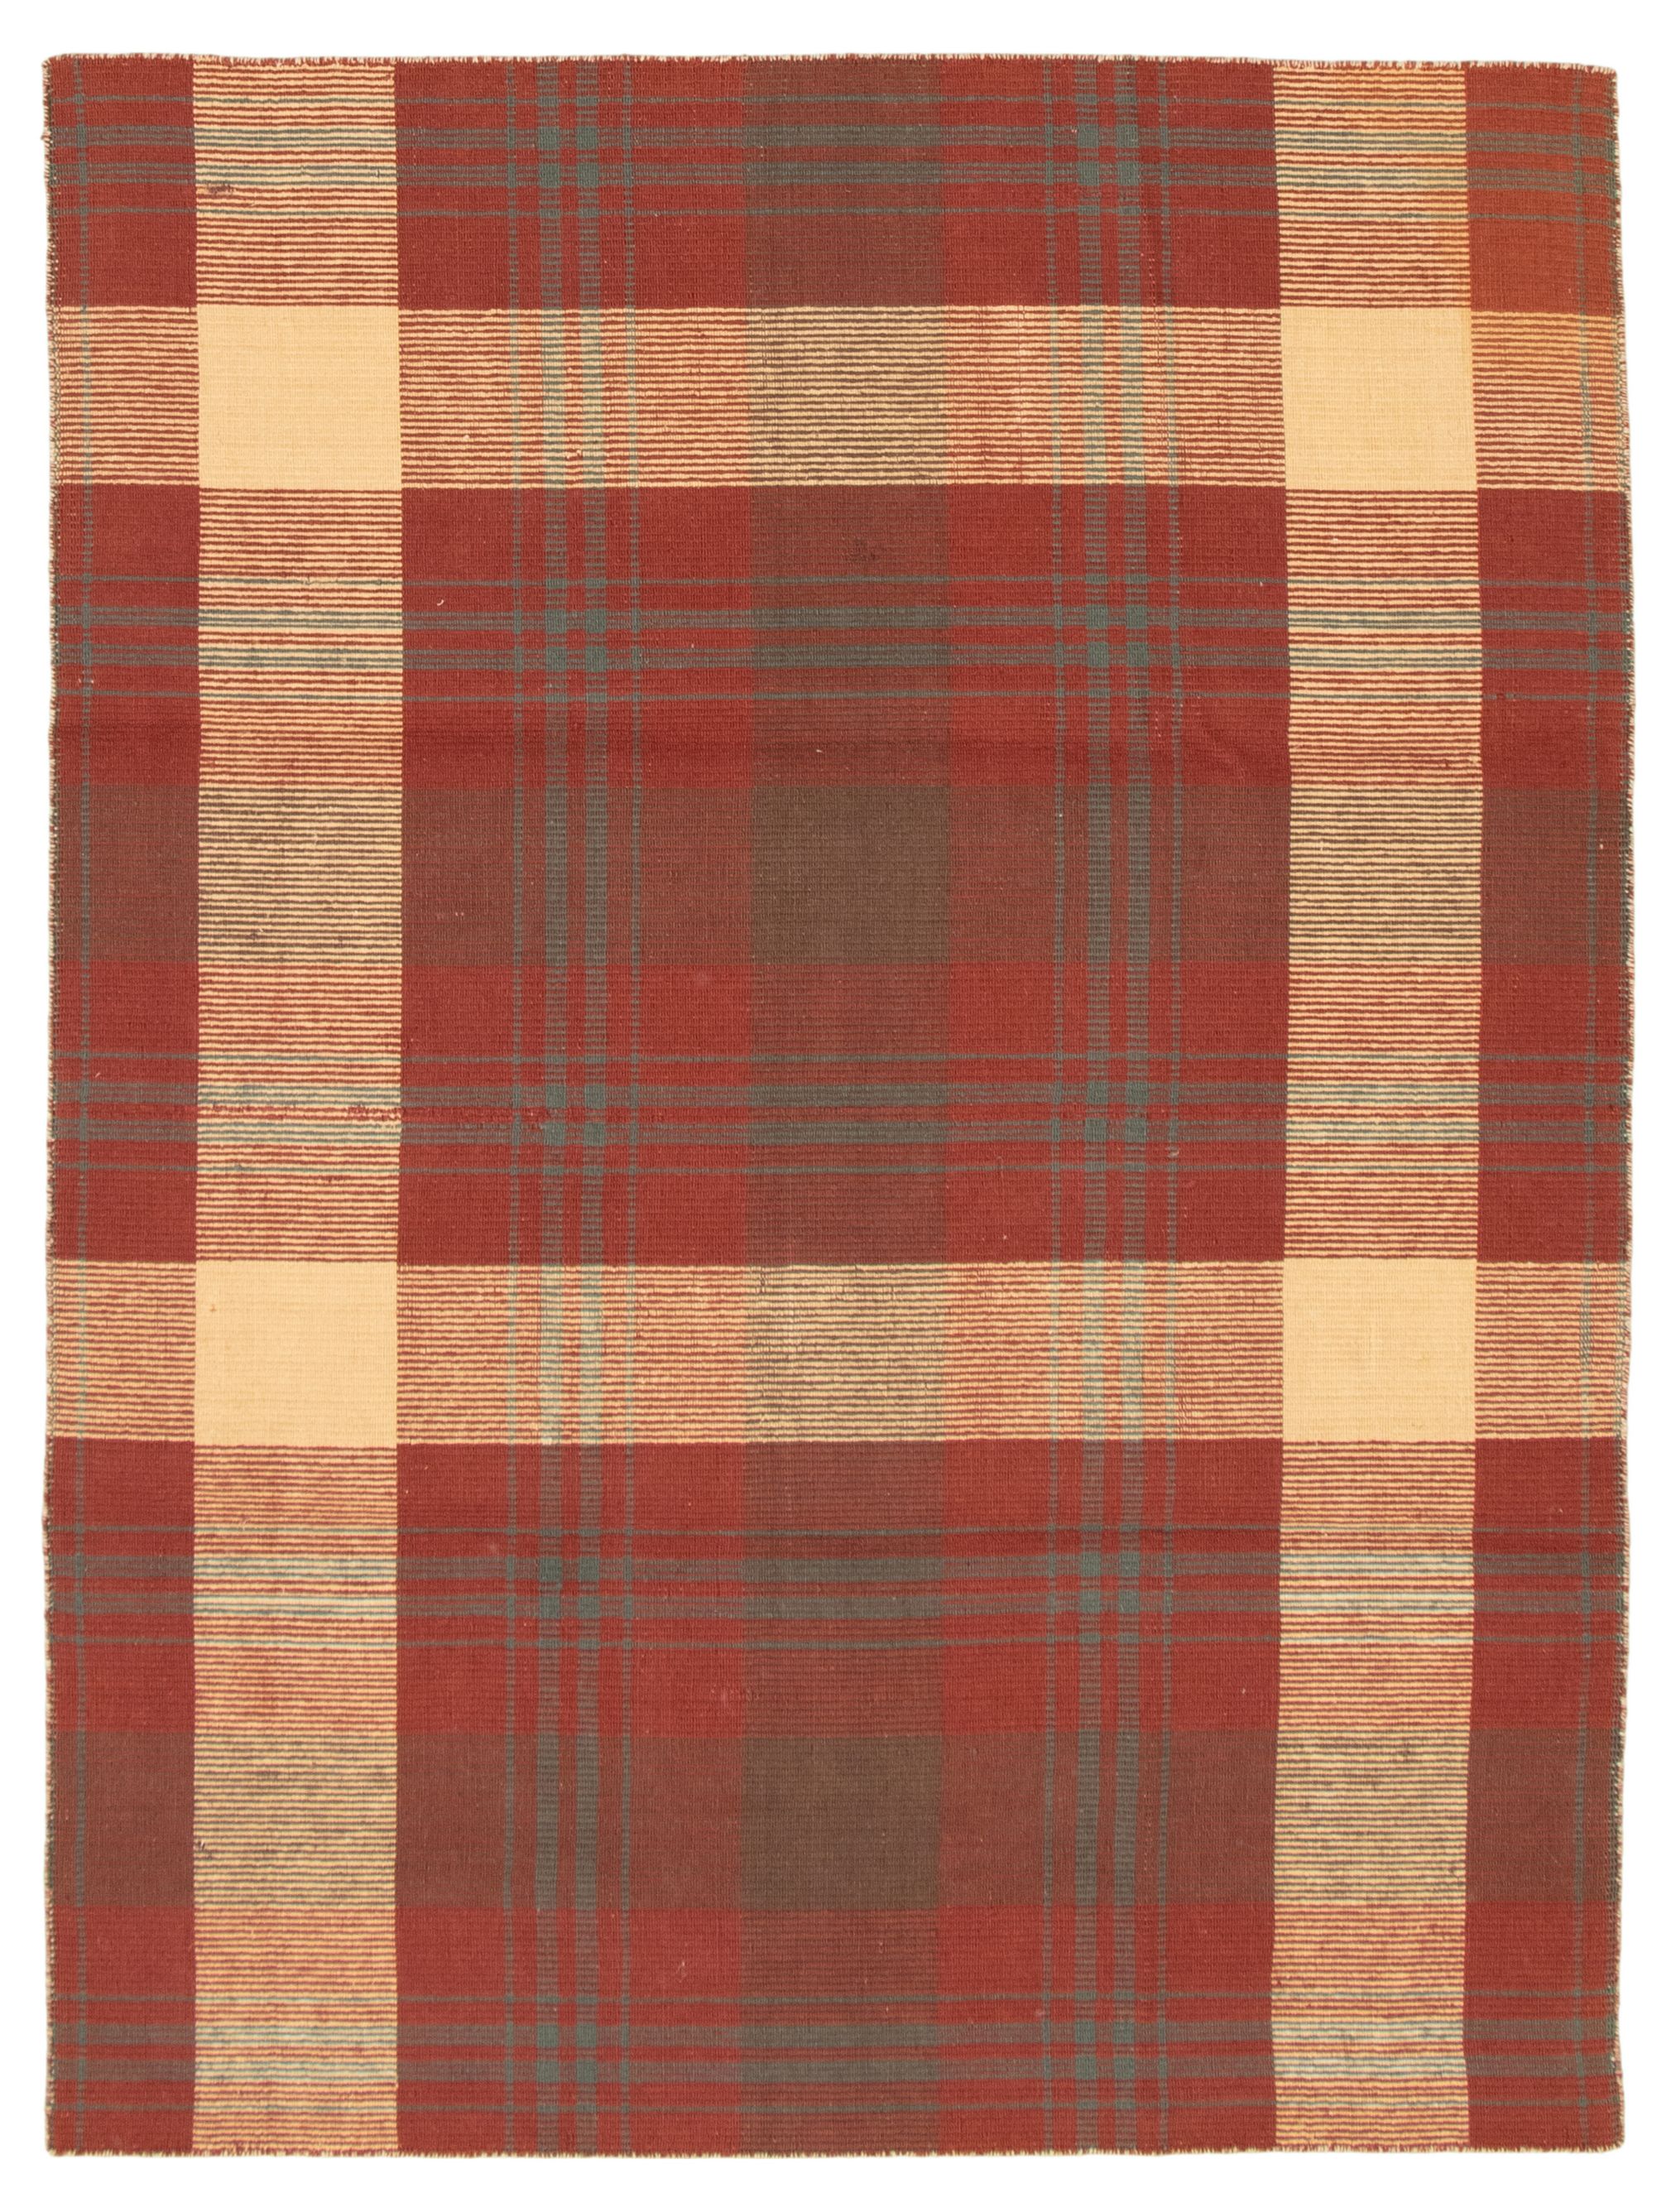 Hand woven Manhattan Dark Red Wool Kilim 5'7" x 7'10"  Size: 5'7" x 7'10"  